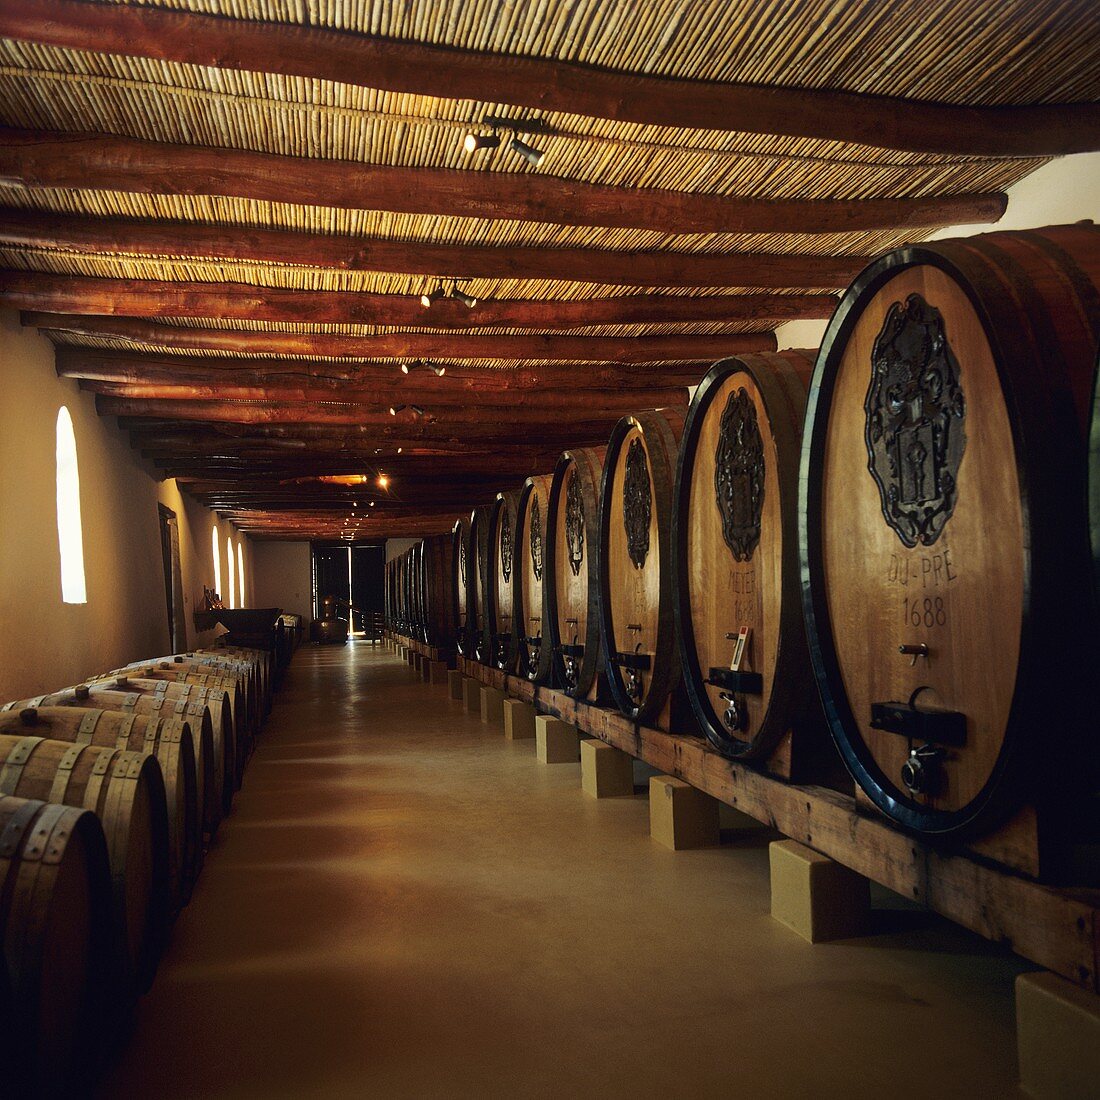 Wine barrels at L'Ormarins Wine Estate, Franschhoek, S. Africa